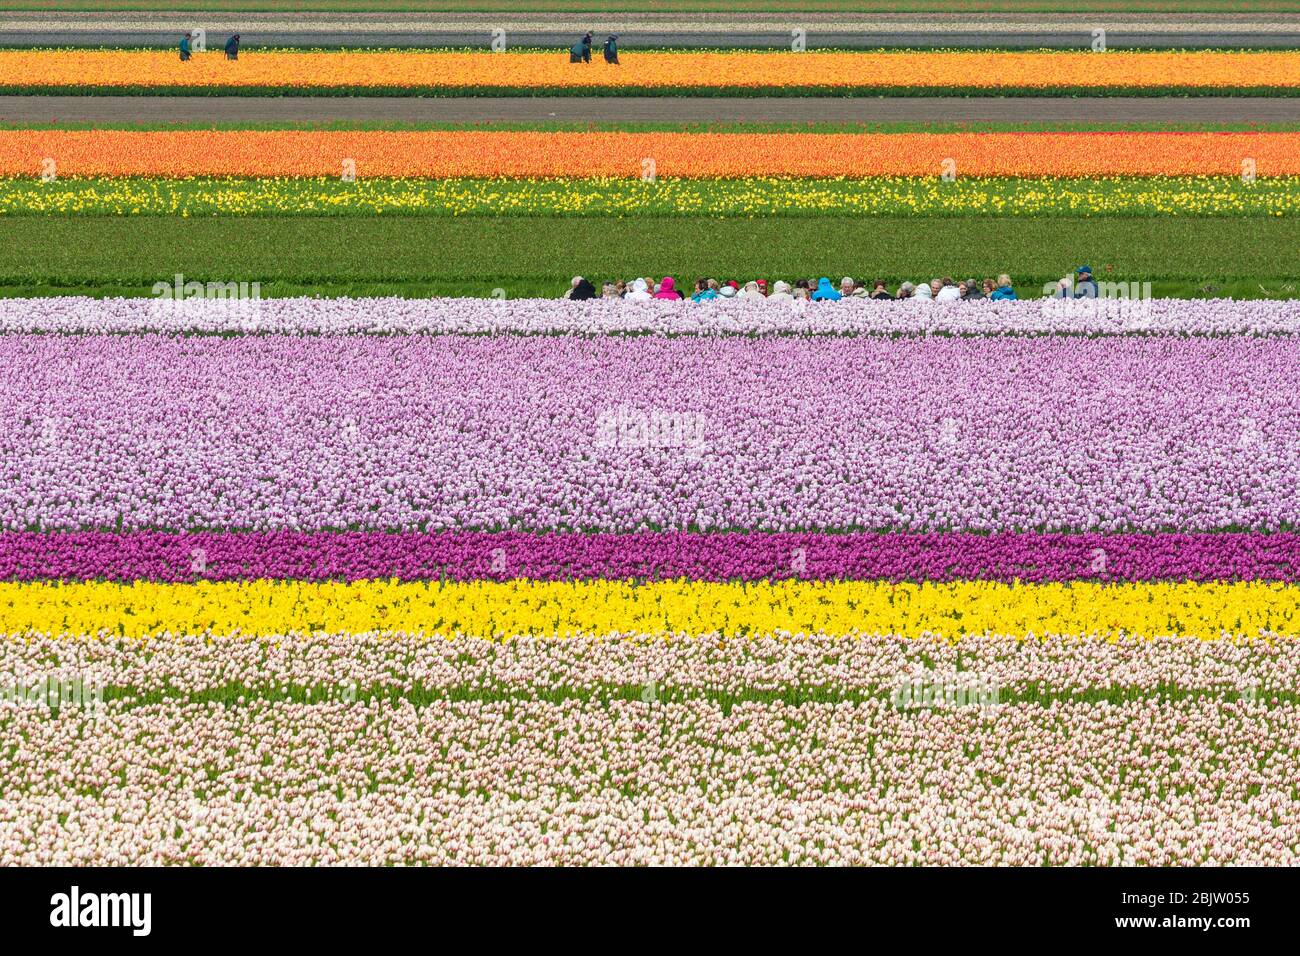 Touristen auf einem Kanal zwischen Tulpenreihen im Keukenhof Park, Lisse, Niederlande Stockfoto